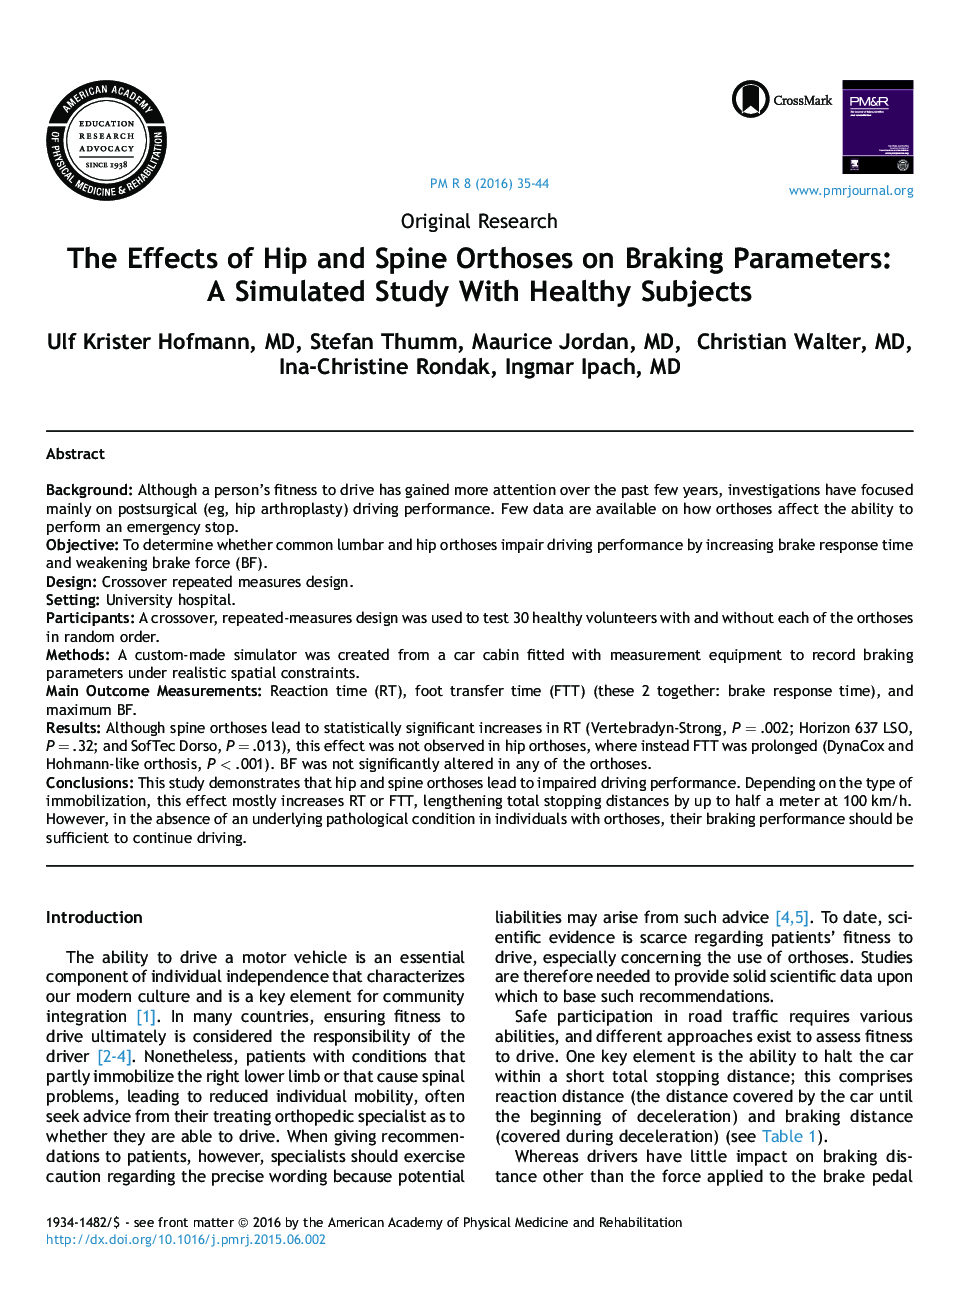 تحقیقات اصلی اثر ارتوپداهای هیپ و اسپین در پارامترهای ترمز: یک مطالعه شبیه سازی با موضوعات سالم 